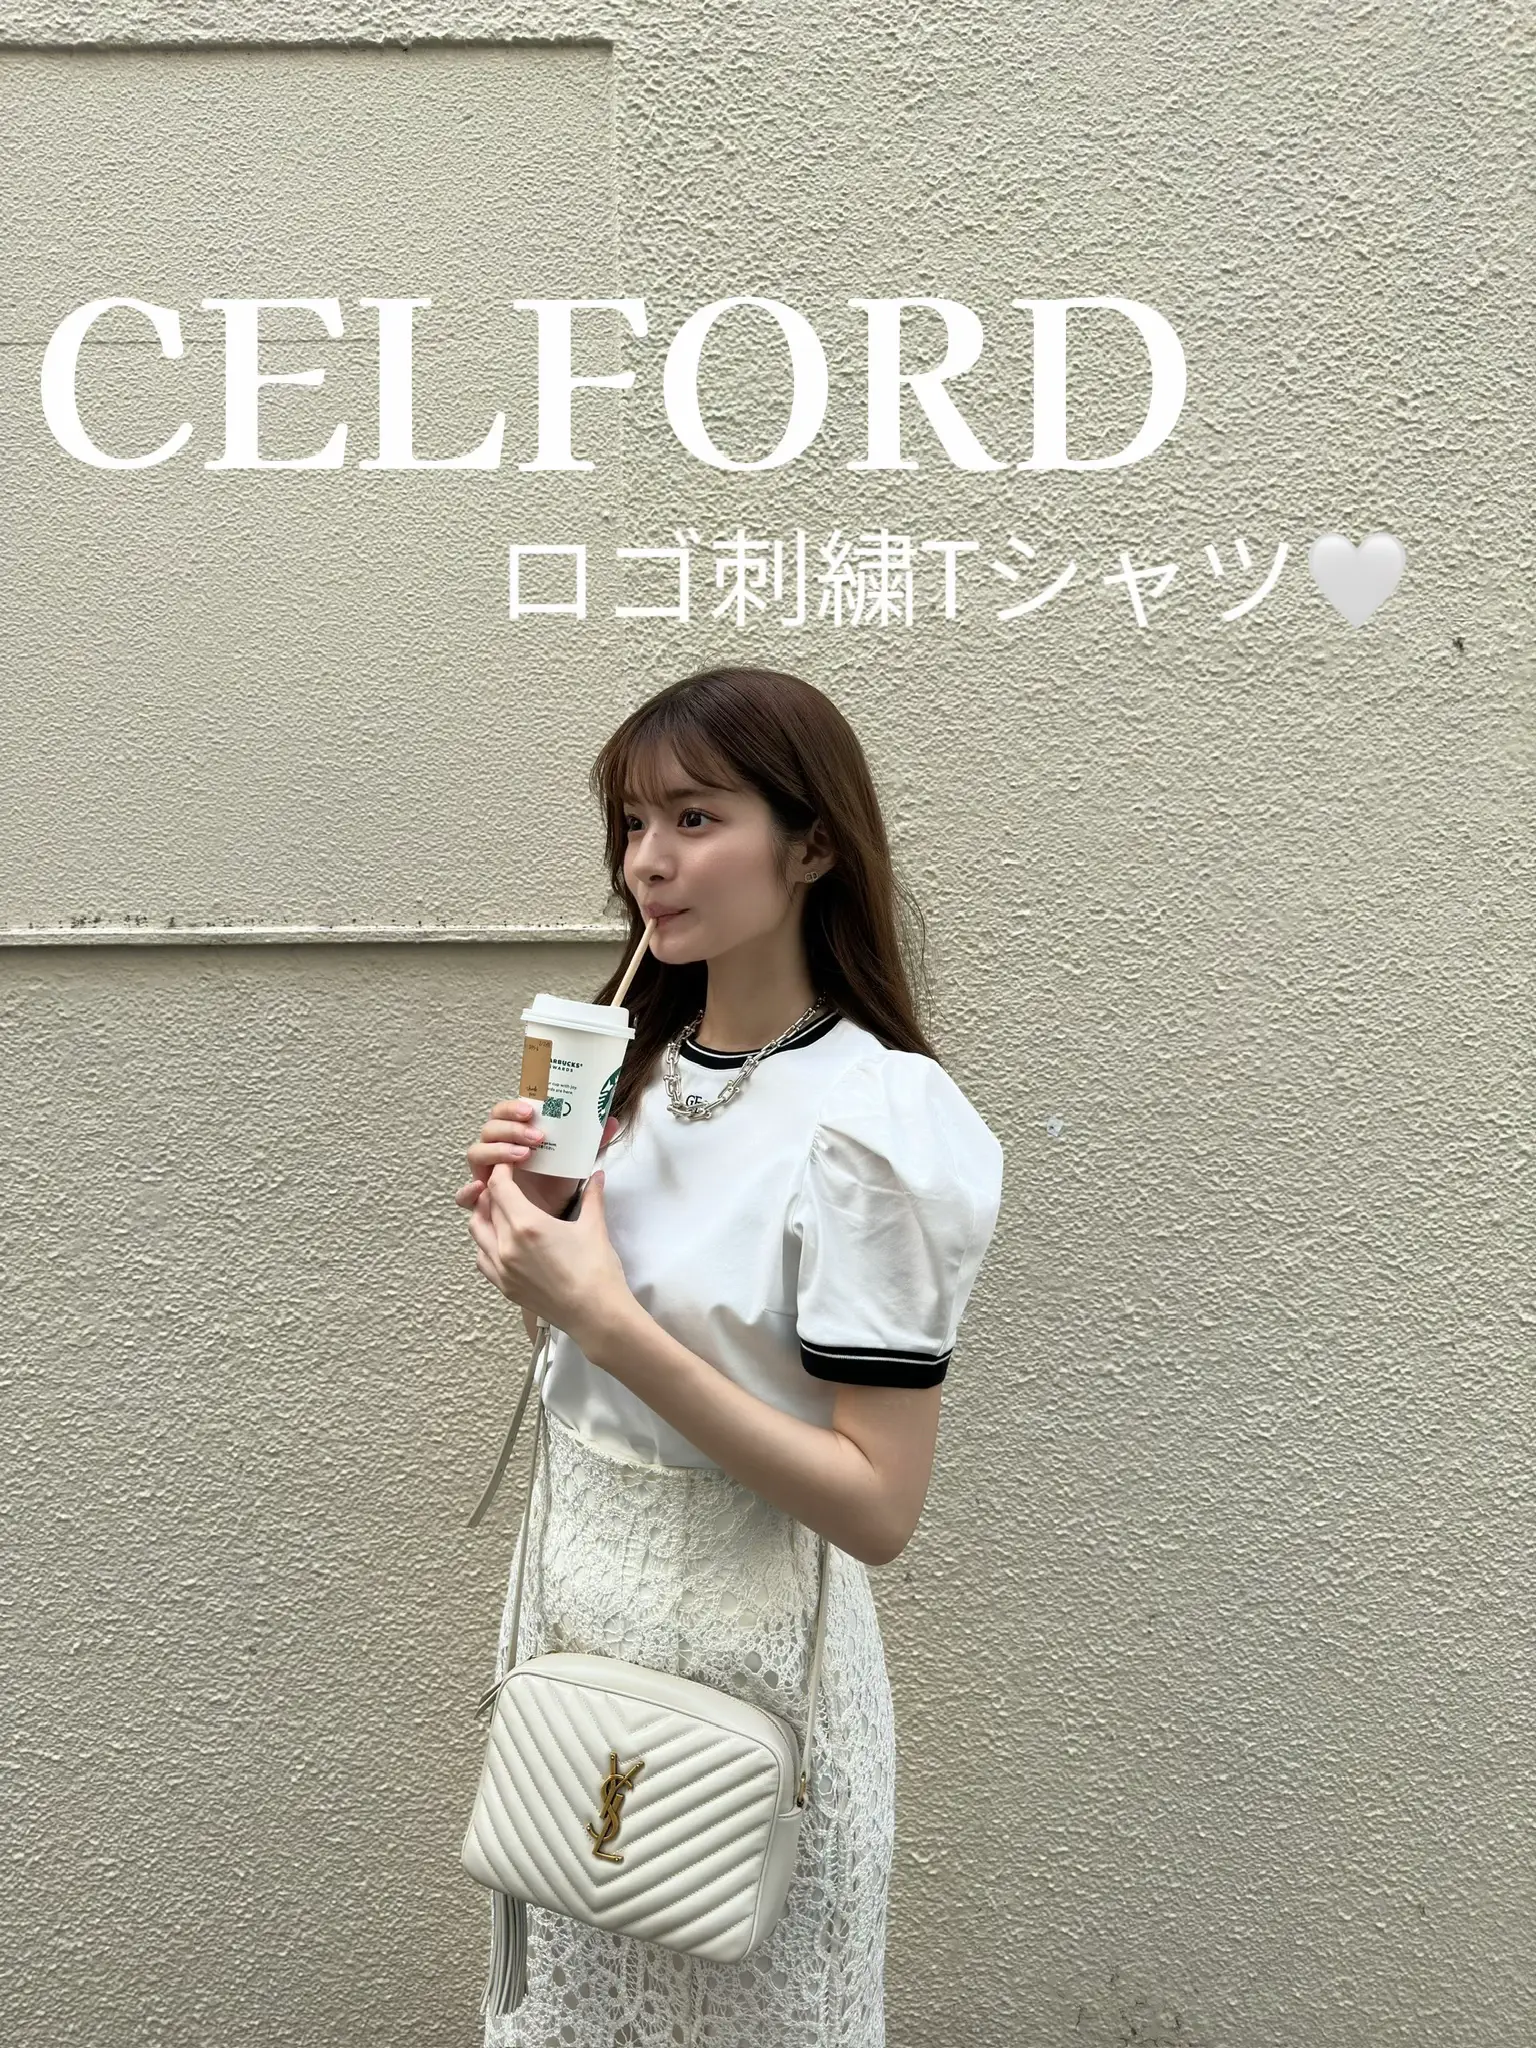 CELFORD  ロゴ刺繍Tシャツ | maiが投稿したフォトブック | Lemon8